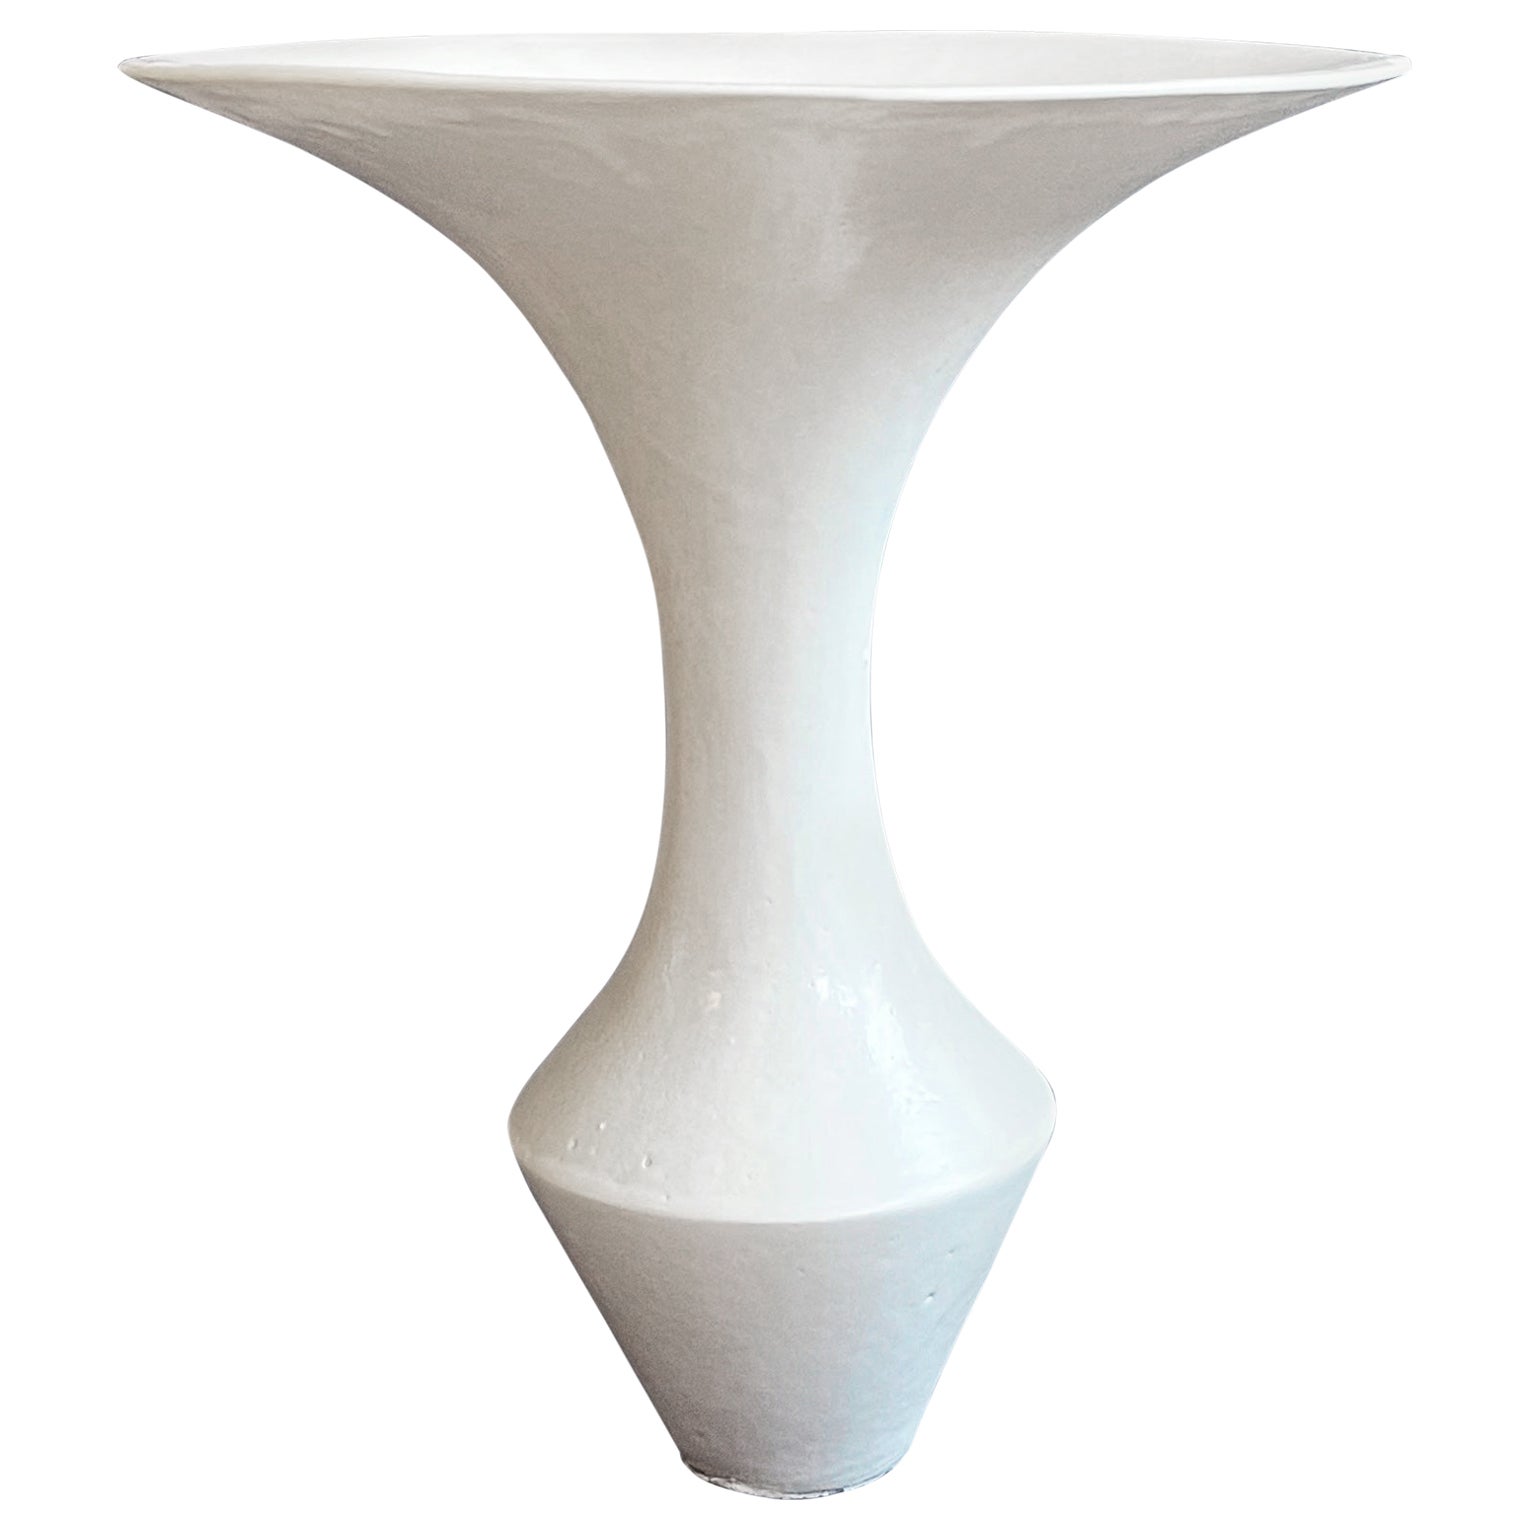 Studio Keramik Weiße Ikebana-Vase mit weißem Funnel, 1970er - 1980er Jahre, Japanese Vibe, Deutschland 